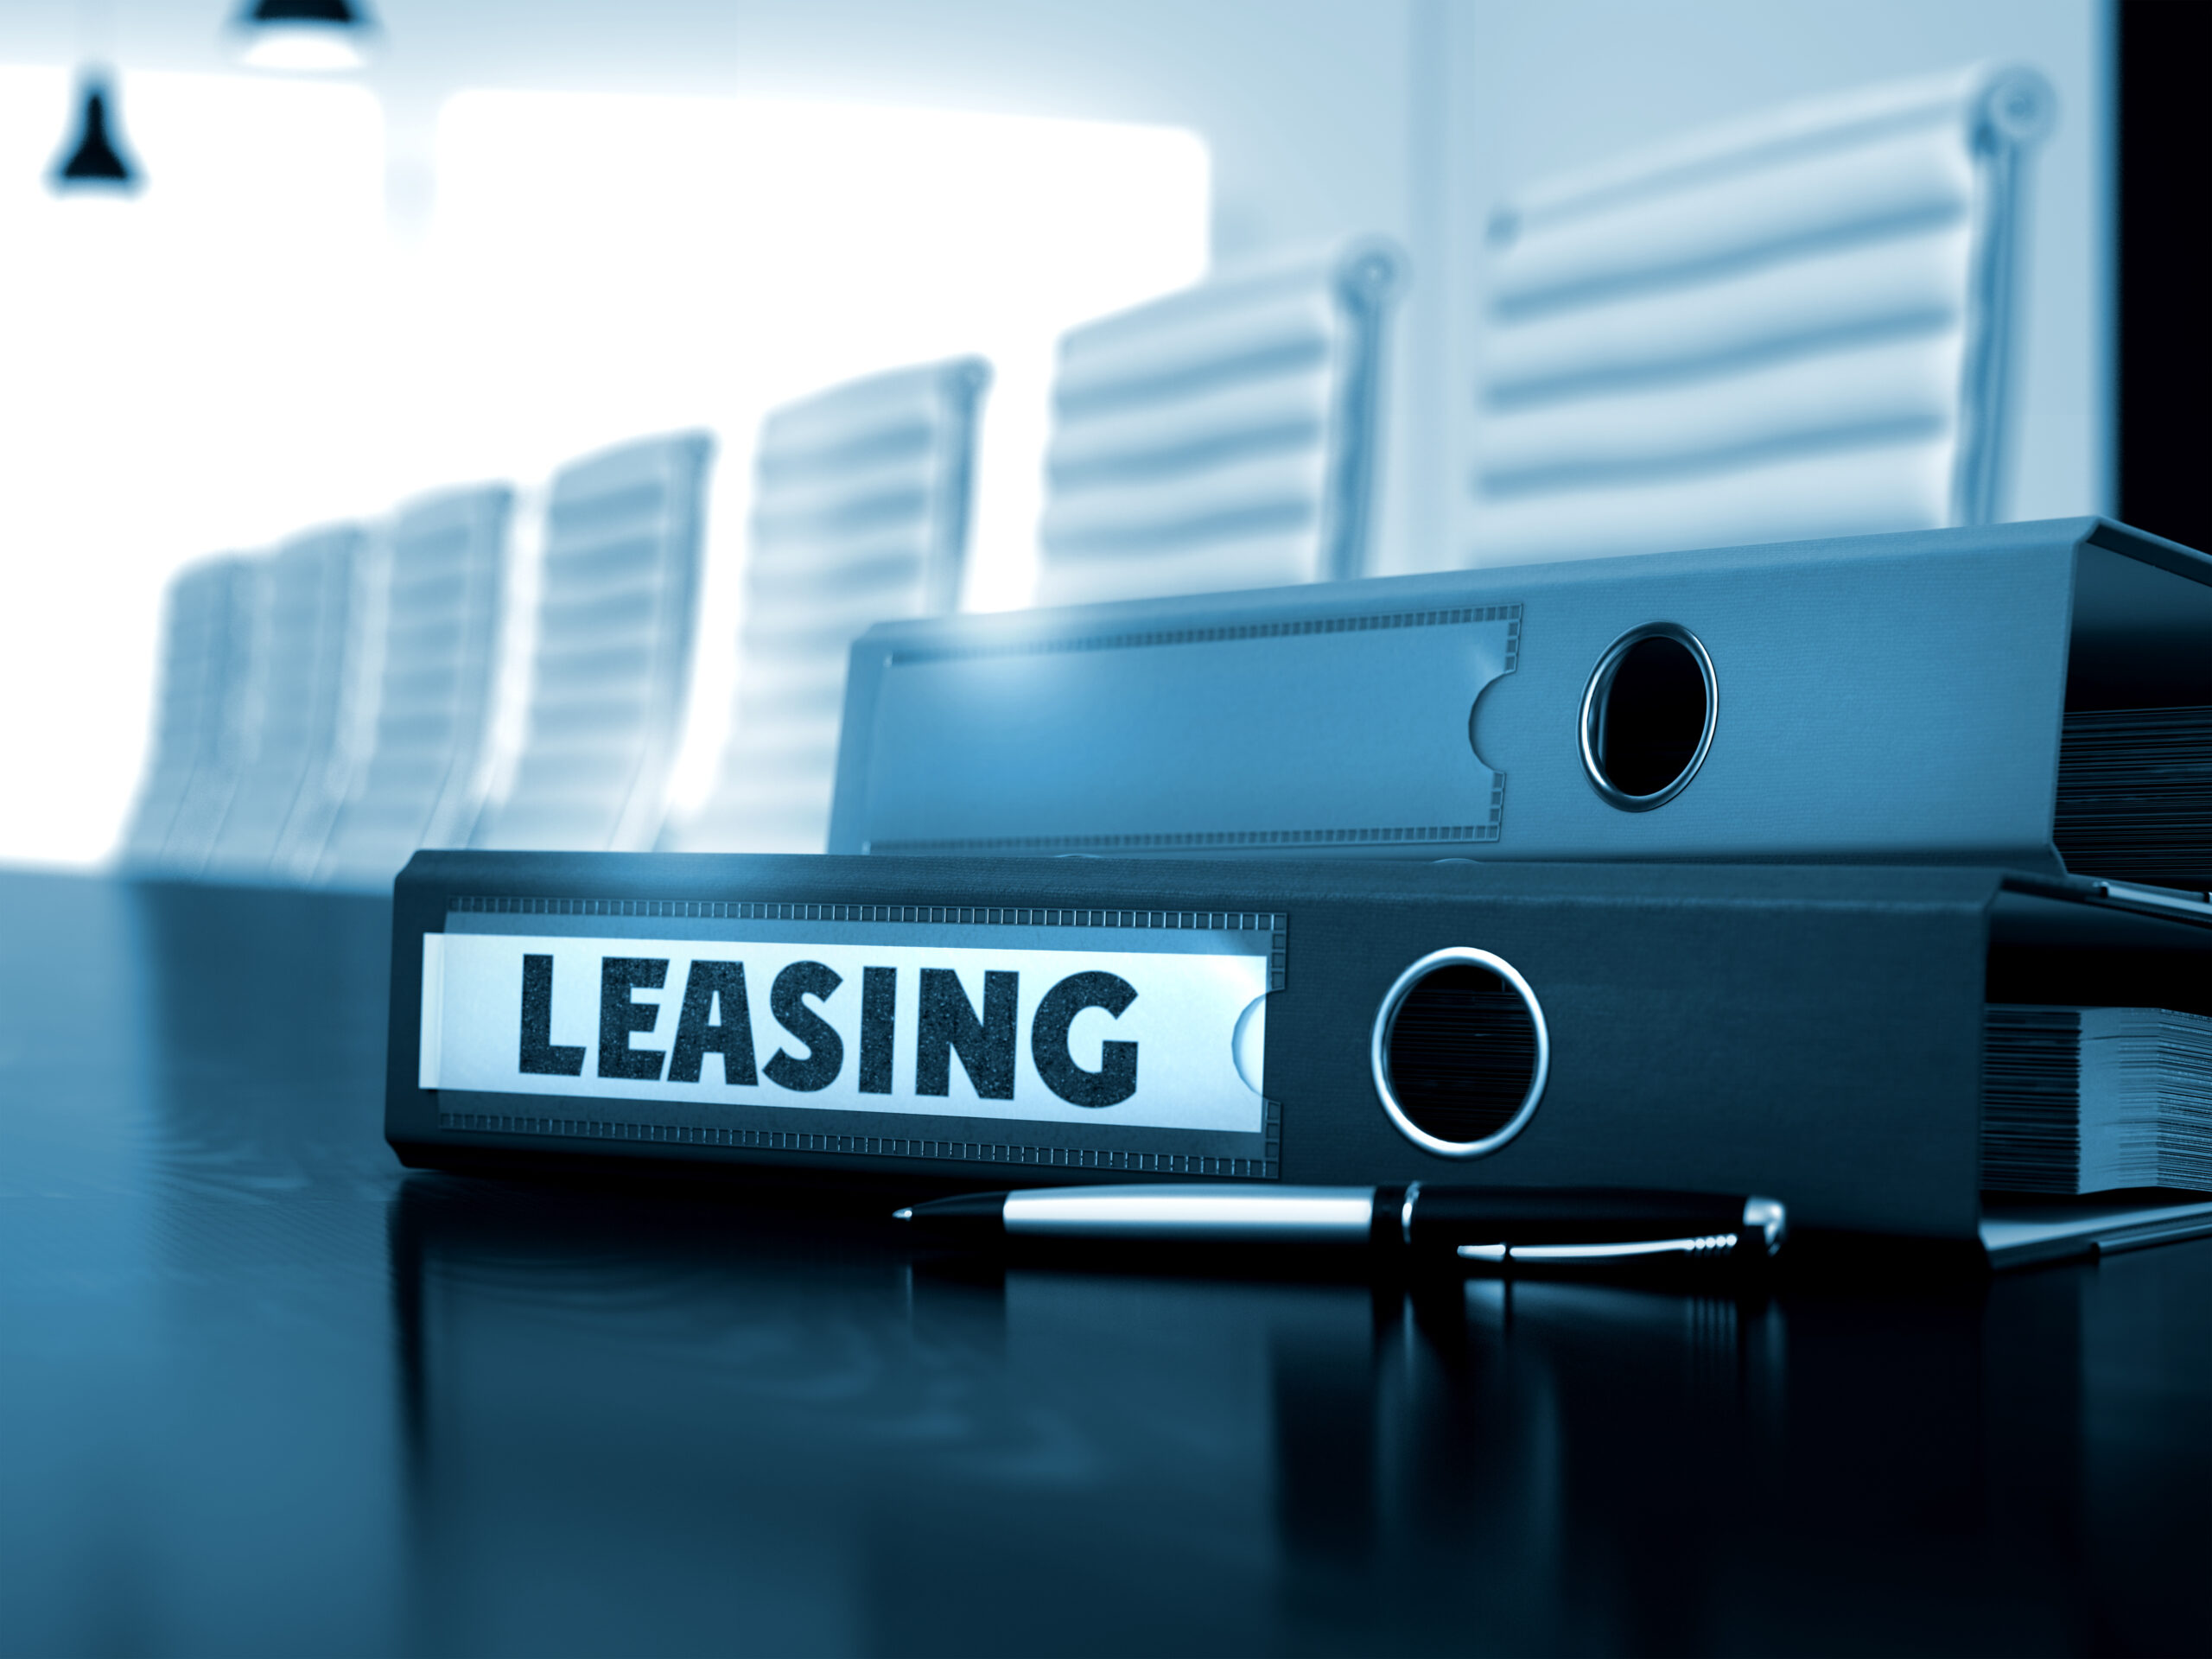 Przedsiębiorco planujesz wykup auta z leasingu do majątku prywatnego? Pospiesz się, jeżeli chcesz je sprzedać bez podatku dochodowego